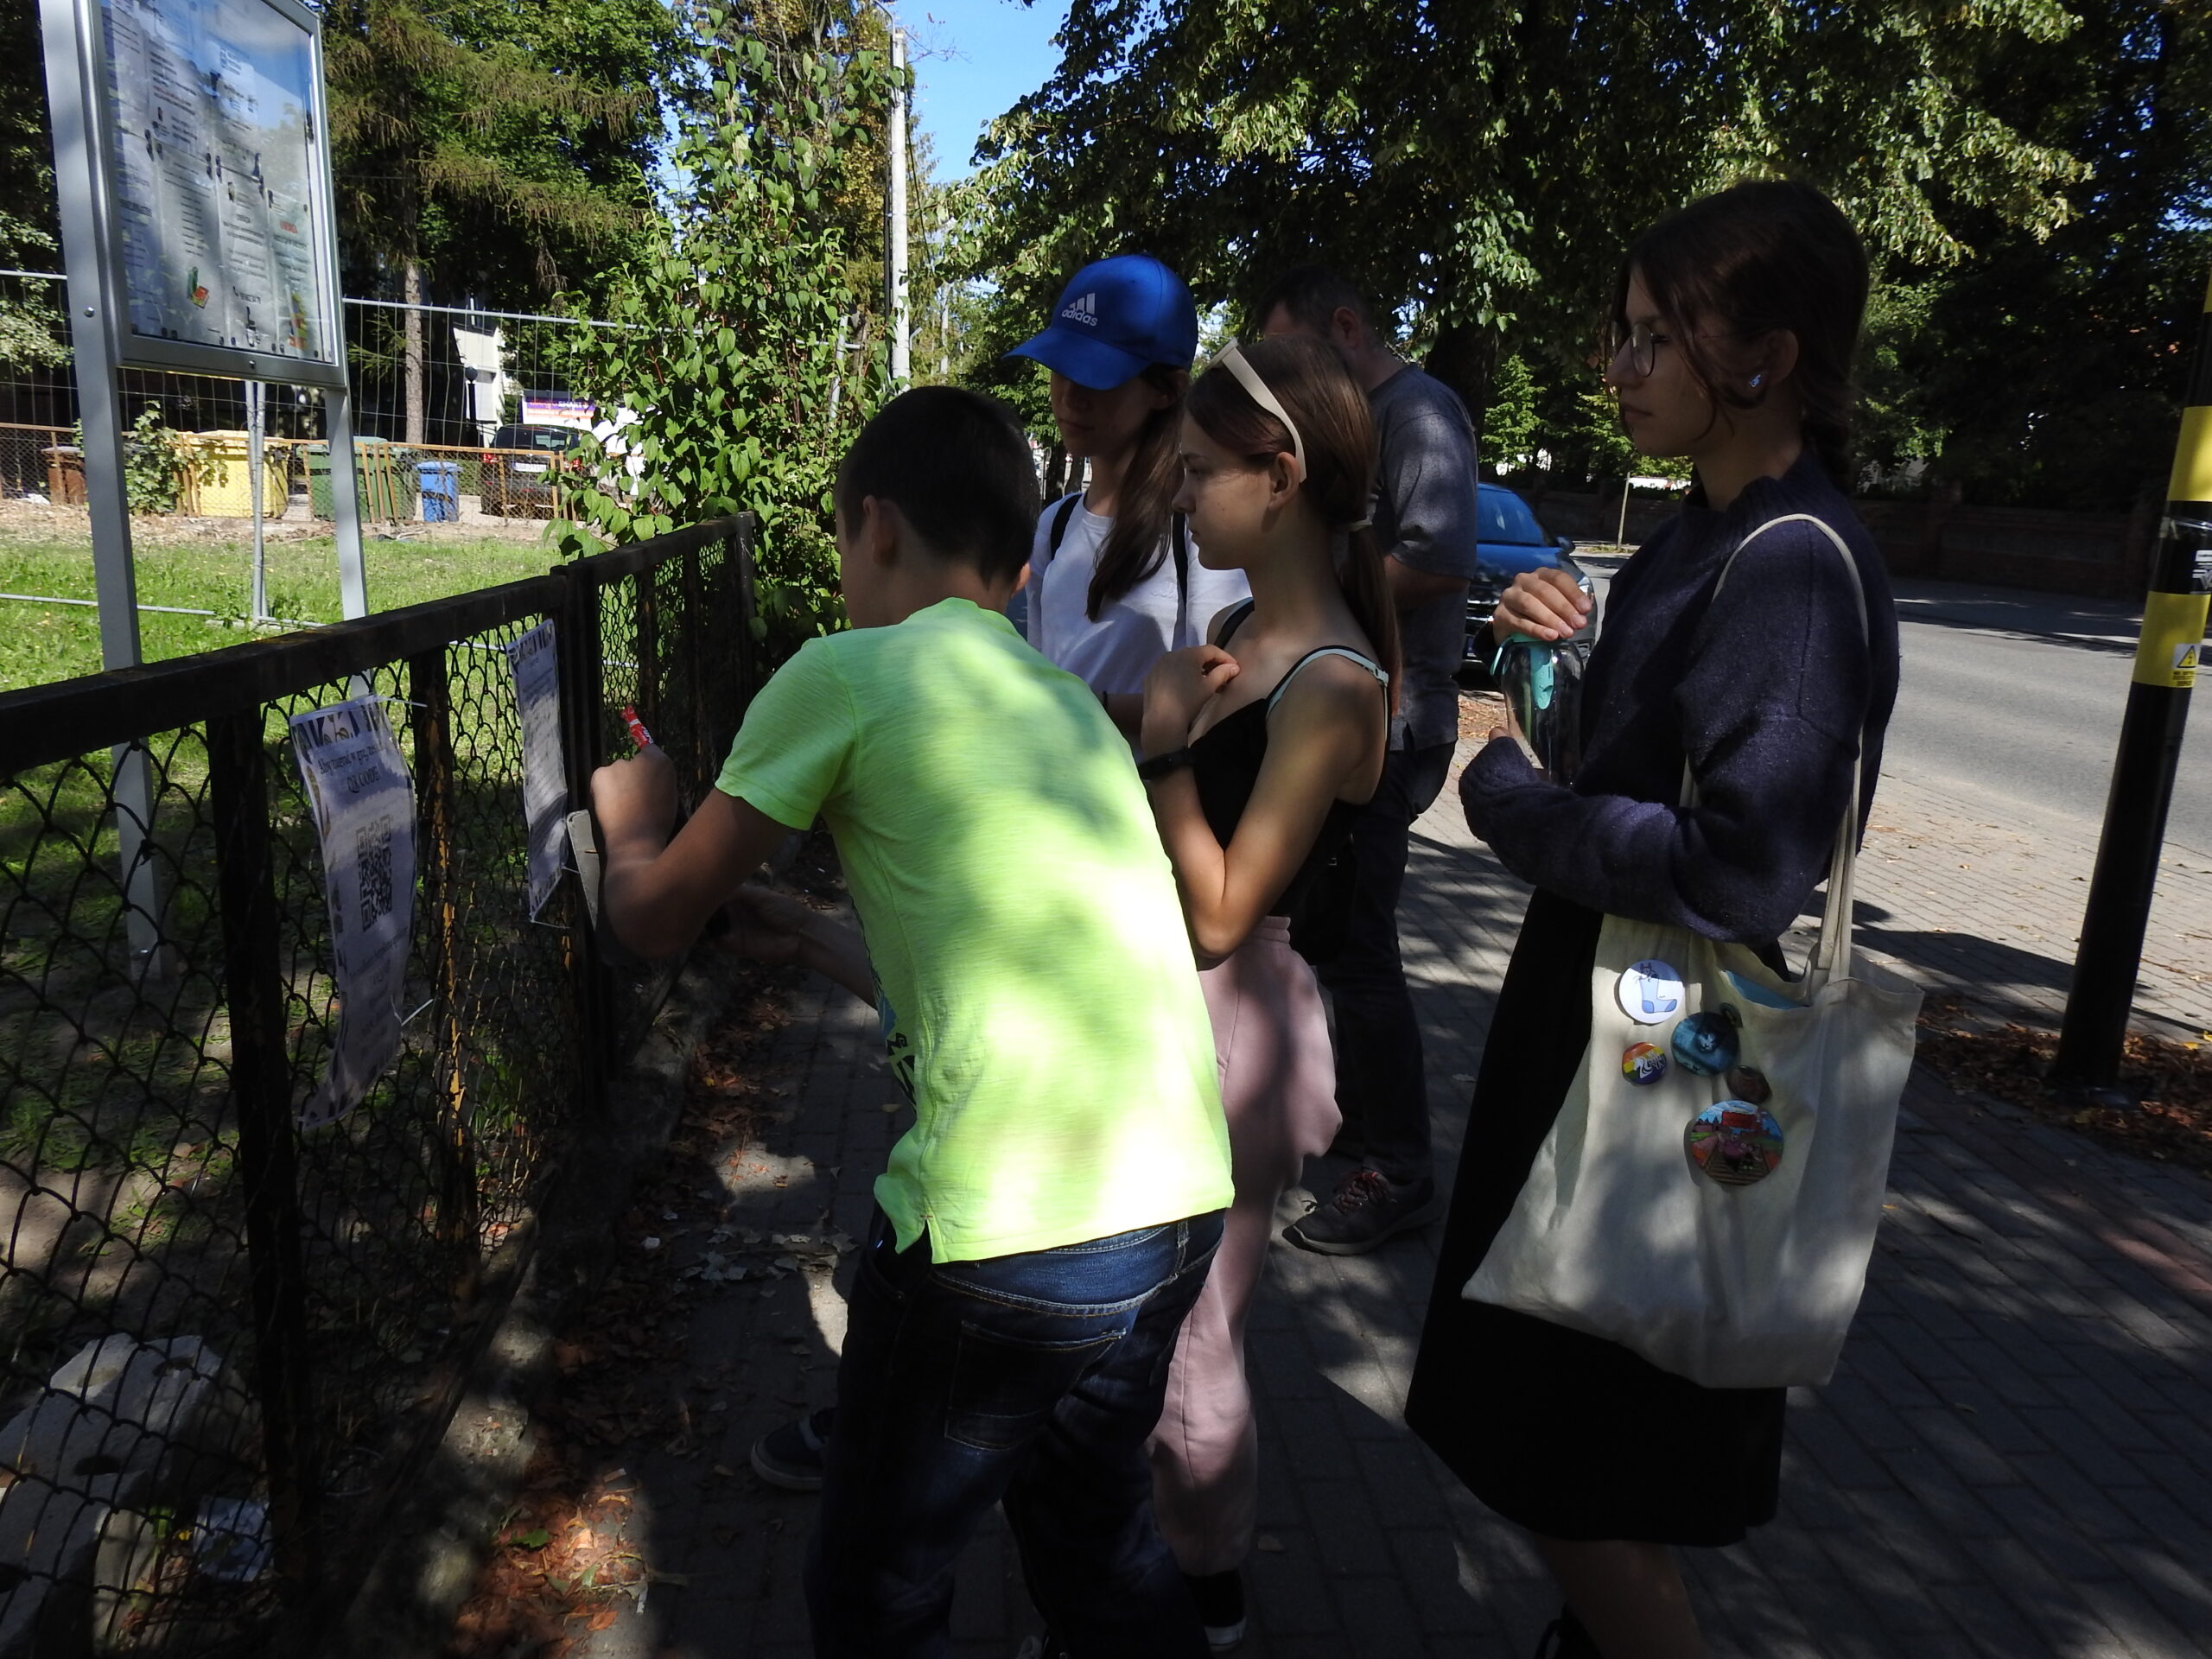 Grupa nastoletnich dzieci stoi przed  ogordzeniem wiodącym do biblioteki, na kórym wiszą zasady gry oraz kod QR. Jedna z osób robi zdjęcie telefonem komórkowym.